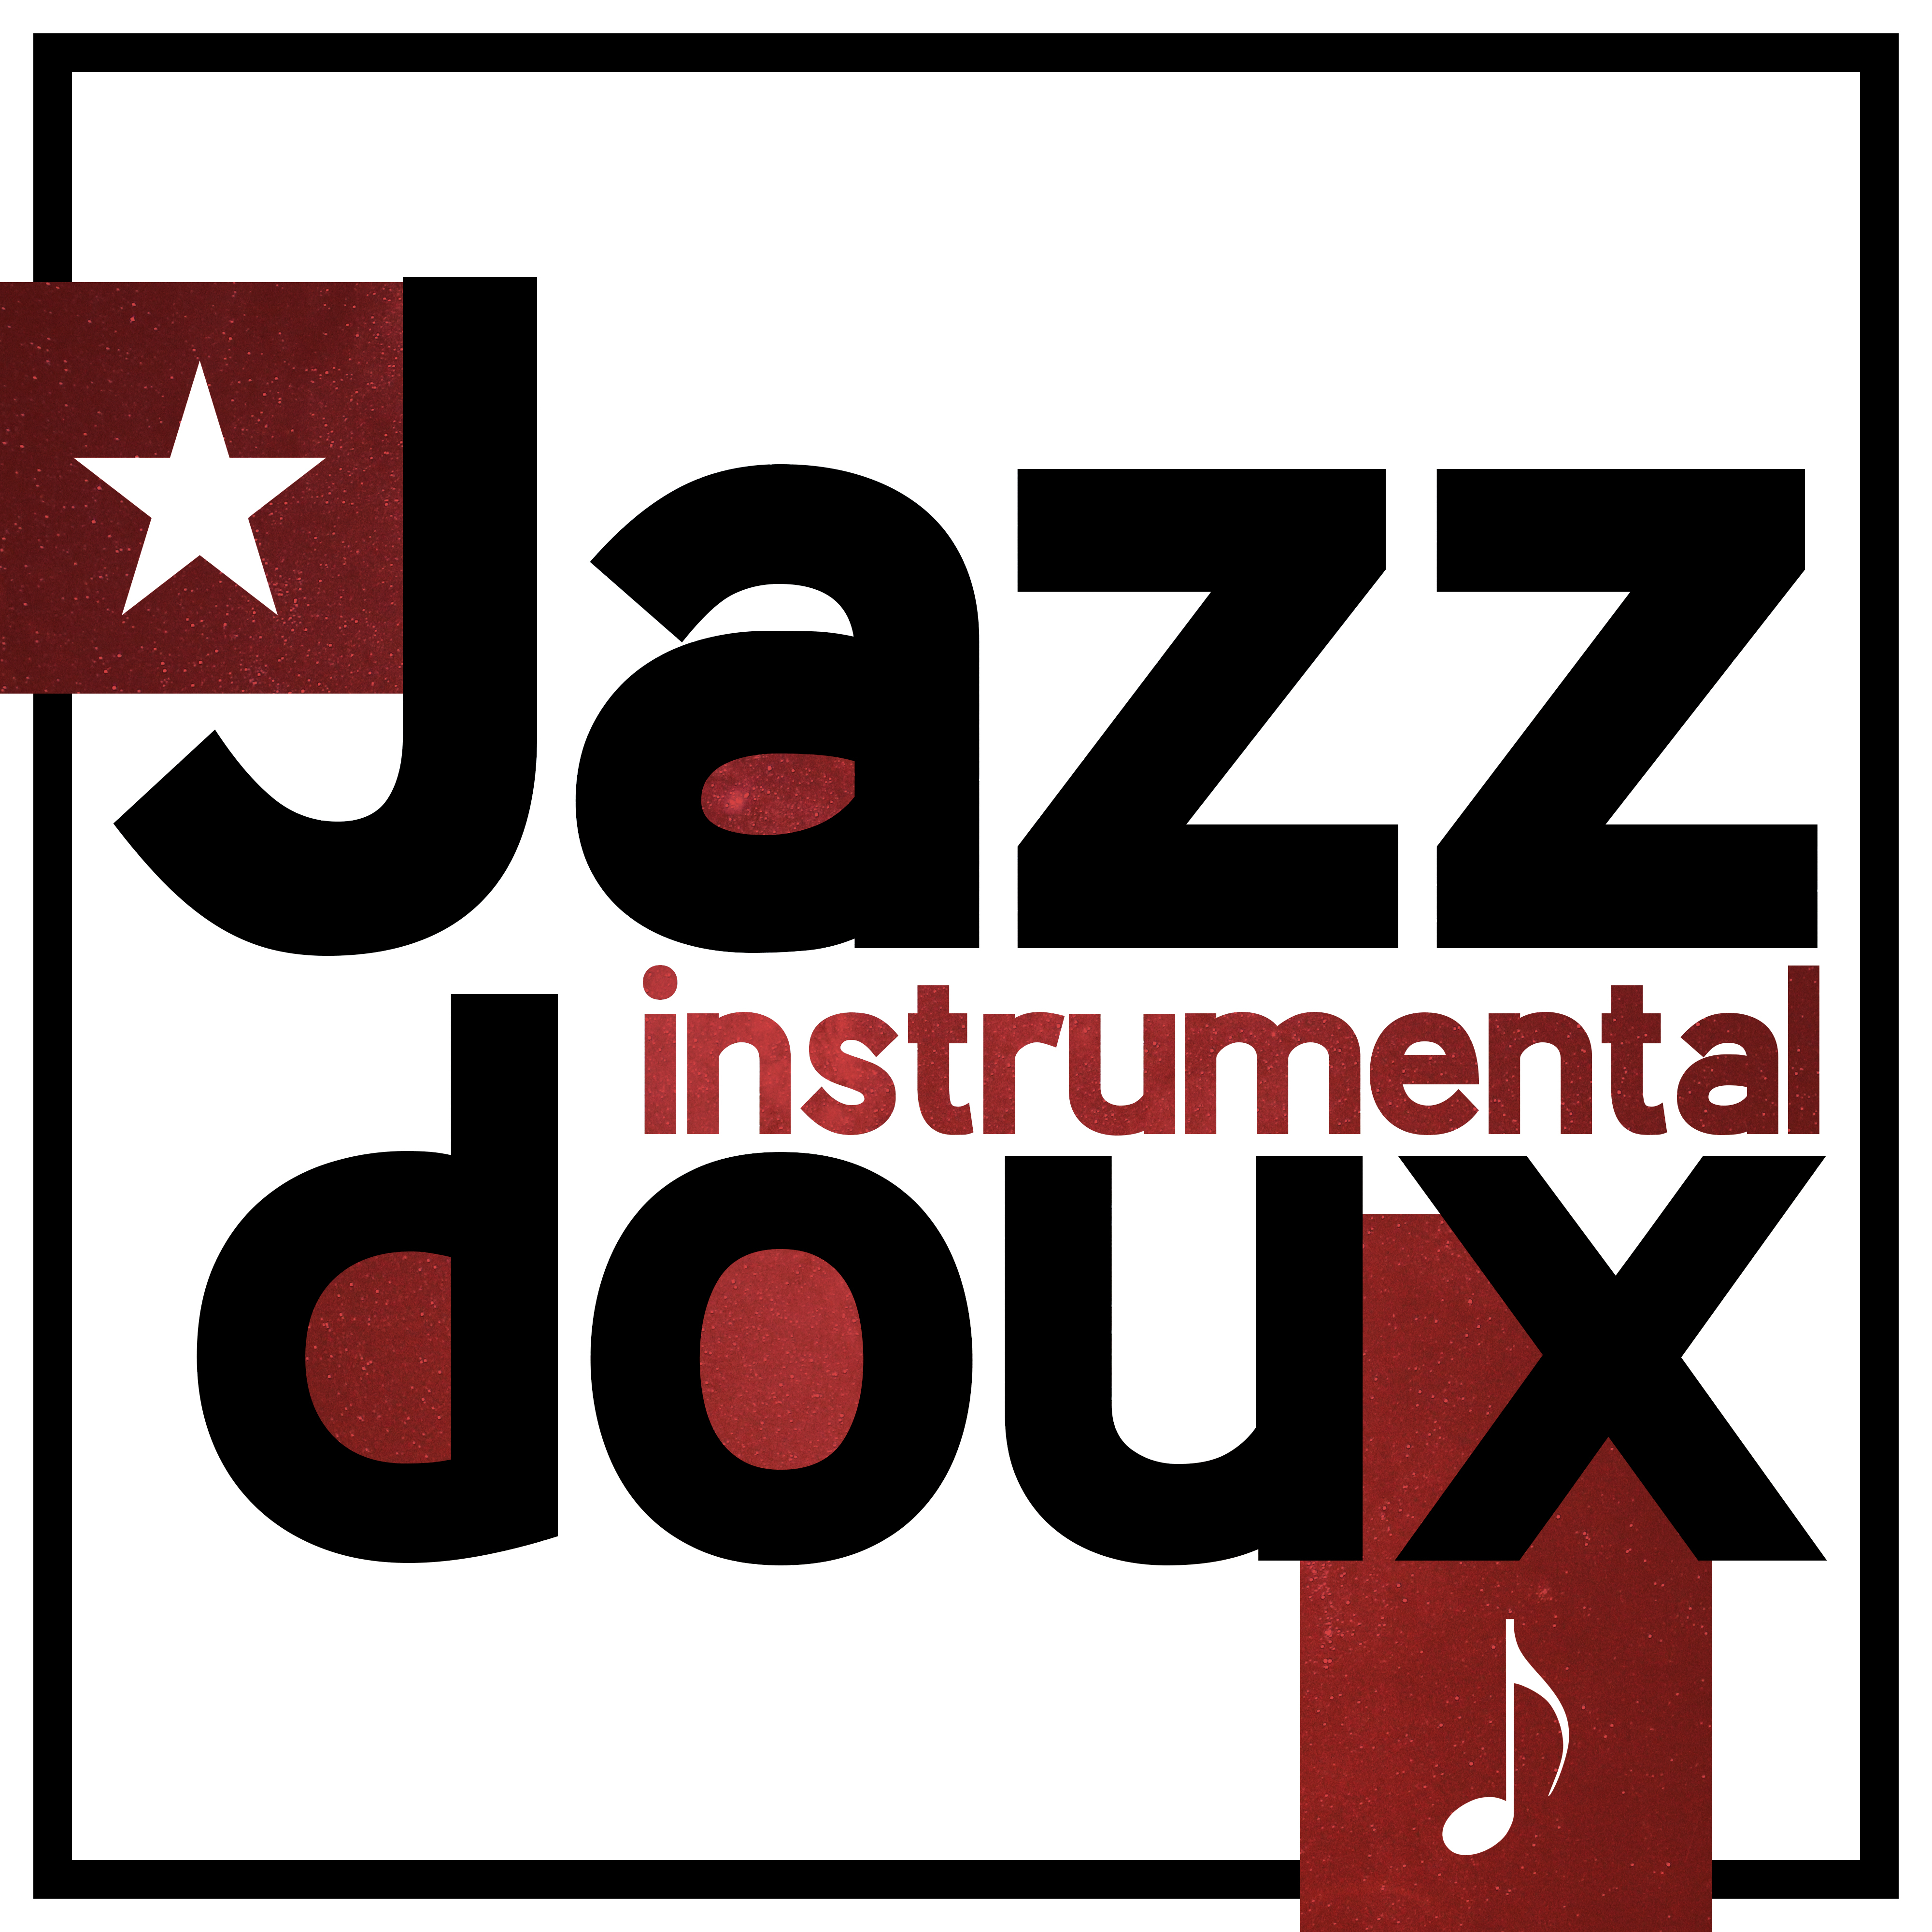 Jazz instrumental doux